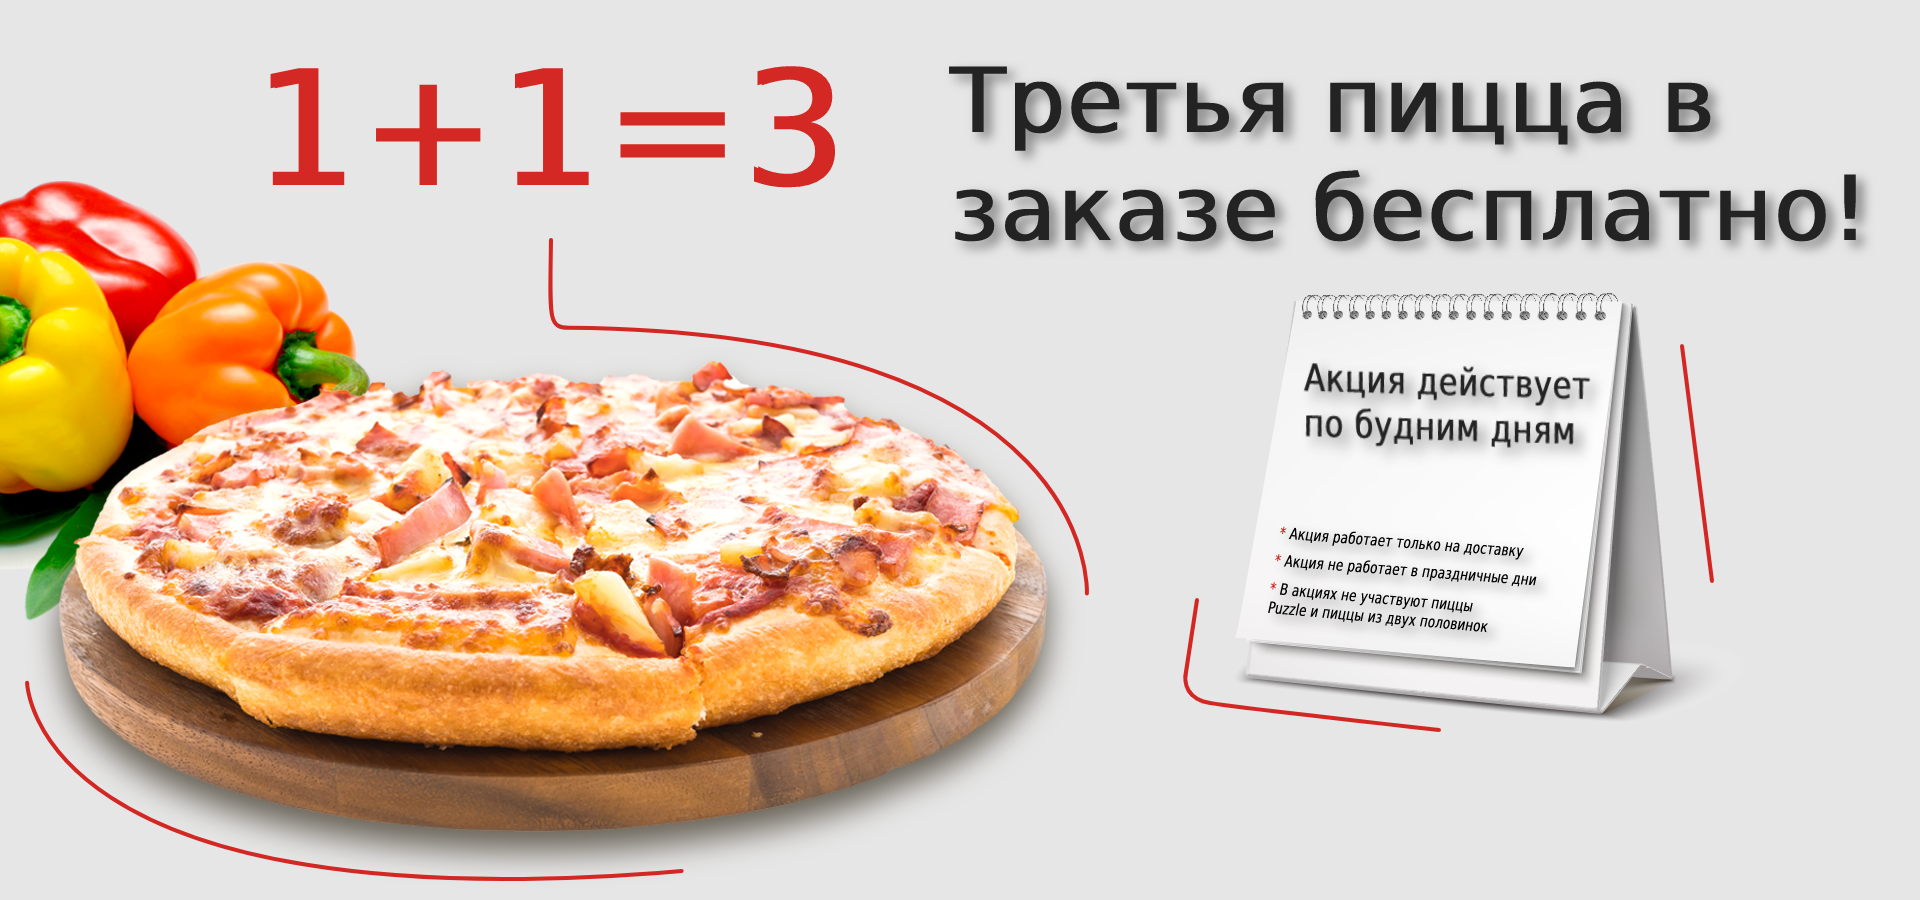 Третья пицца в заказе бесплатно!